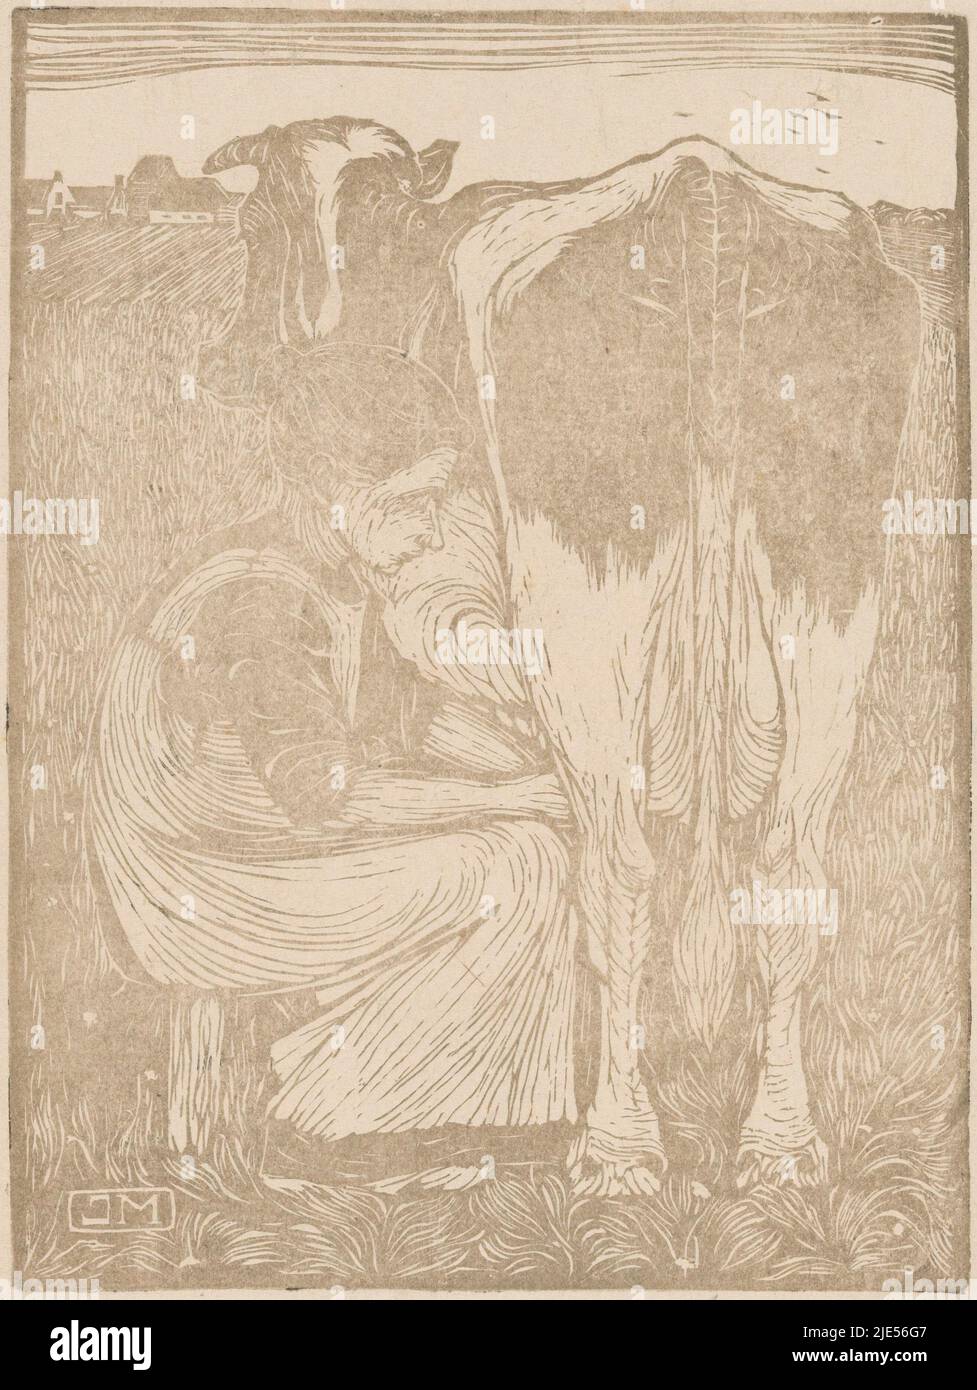 Una donna è seduta su uno sgabello in un prato mungendo una mucca, Koemelkster, tipografo: Jan Mankes, (firmato dall'artista), 1914, carta, h 230 mm x w 173 mm Foto Stock